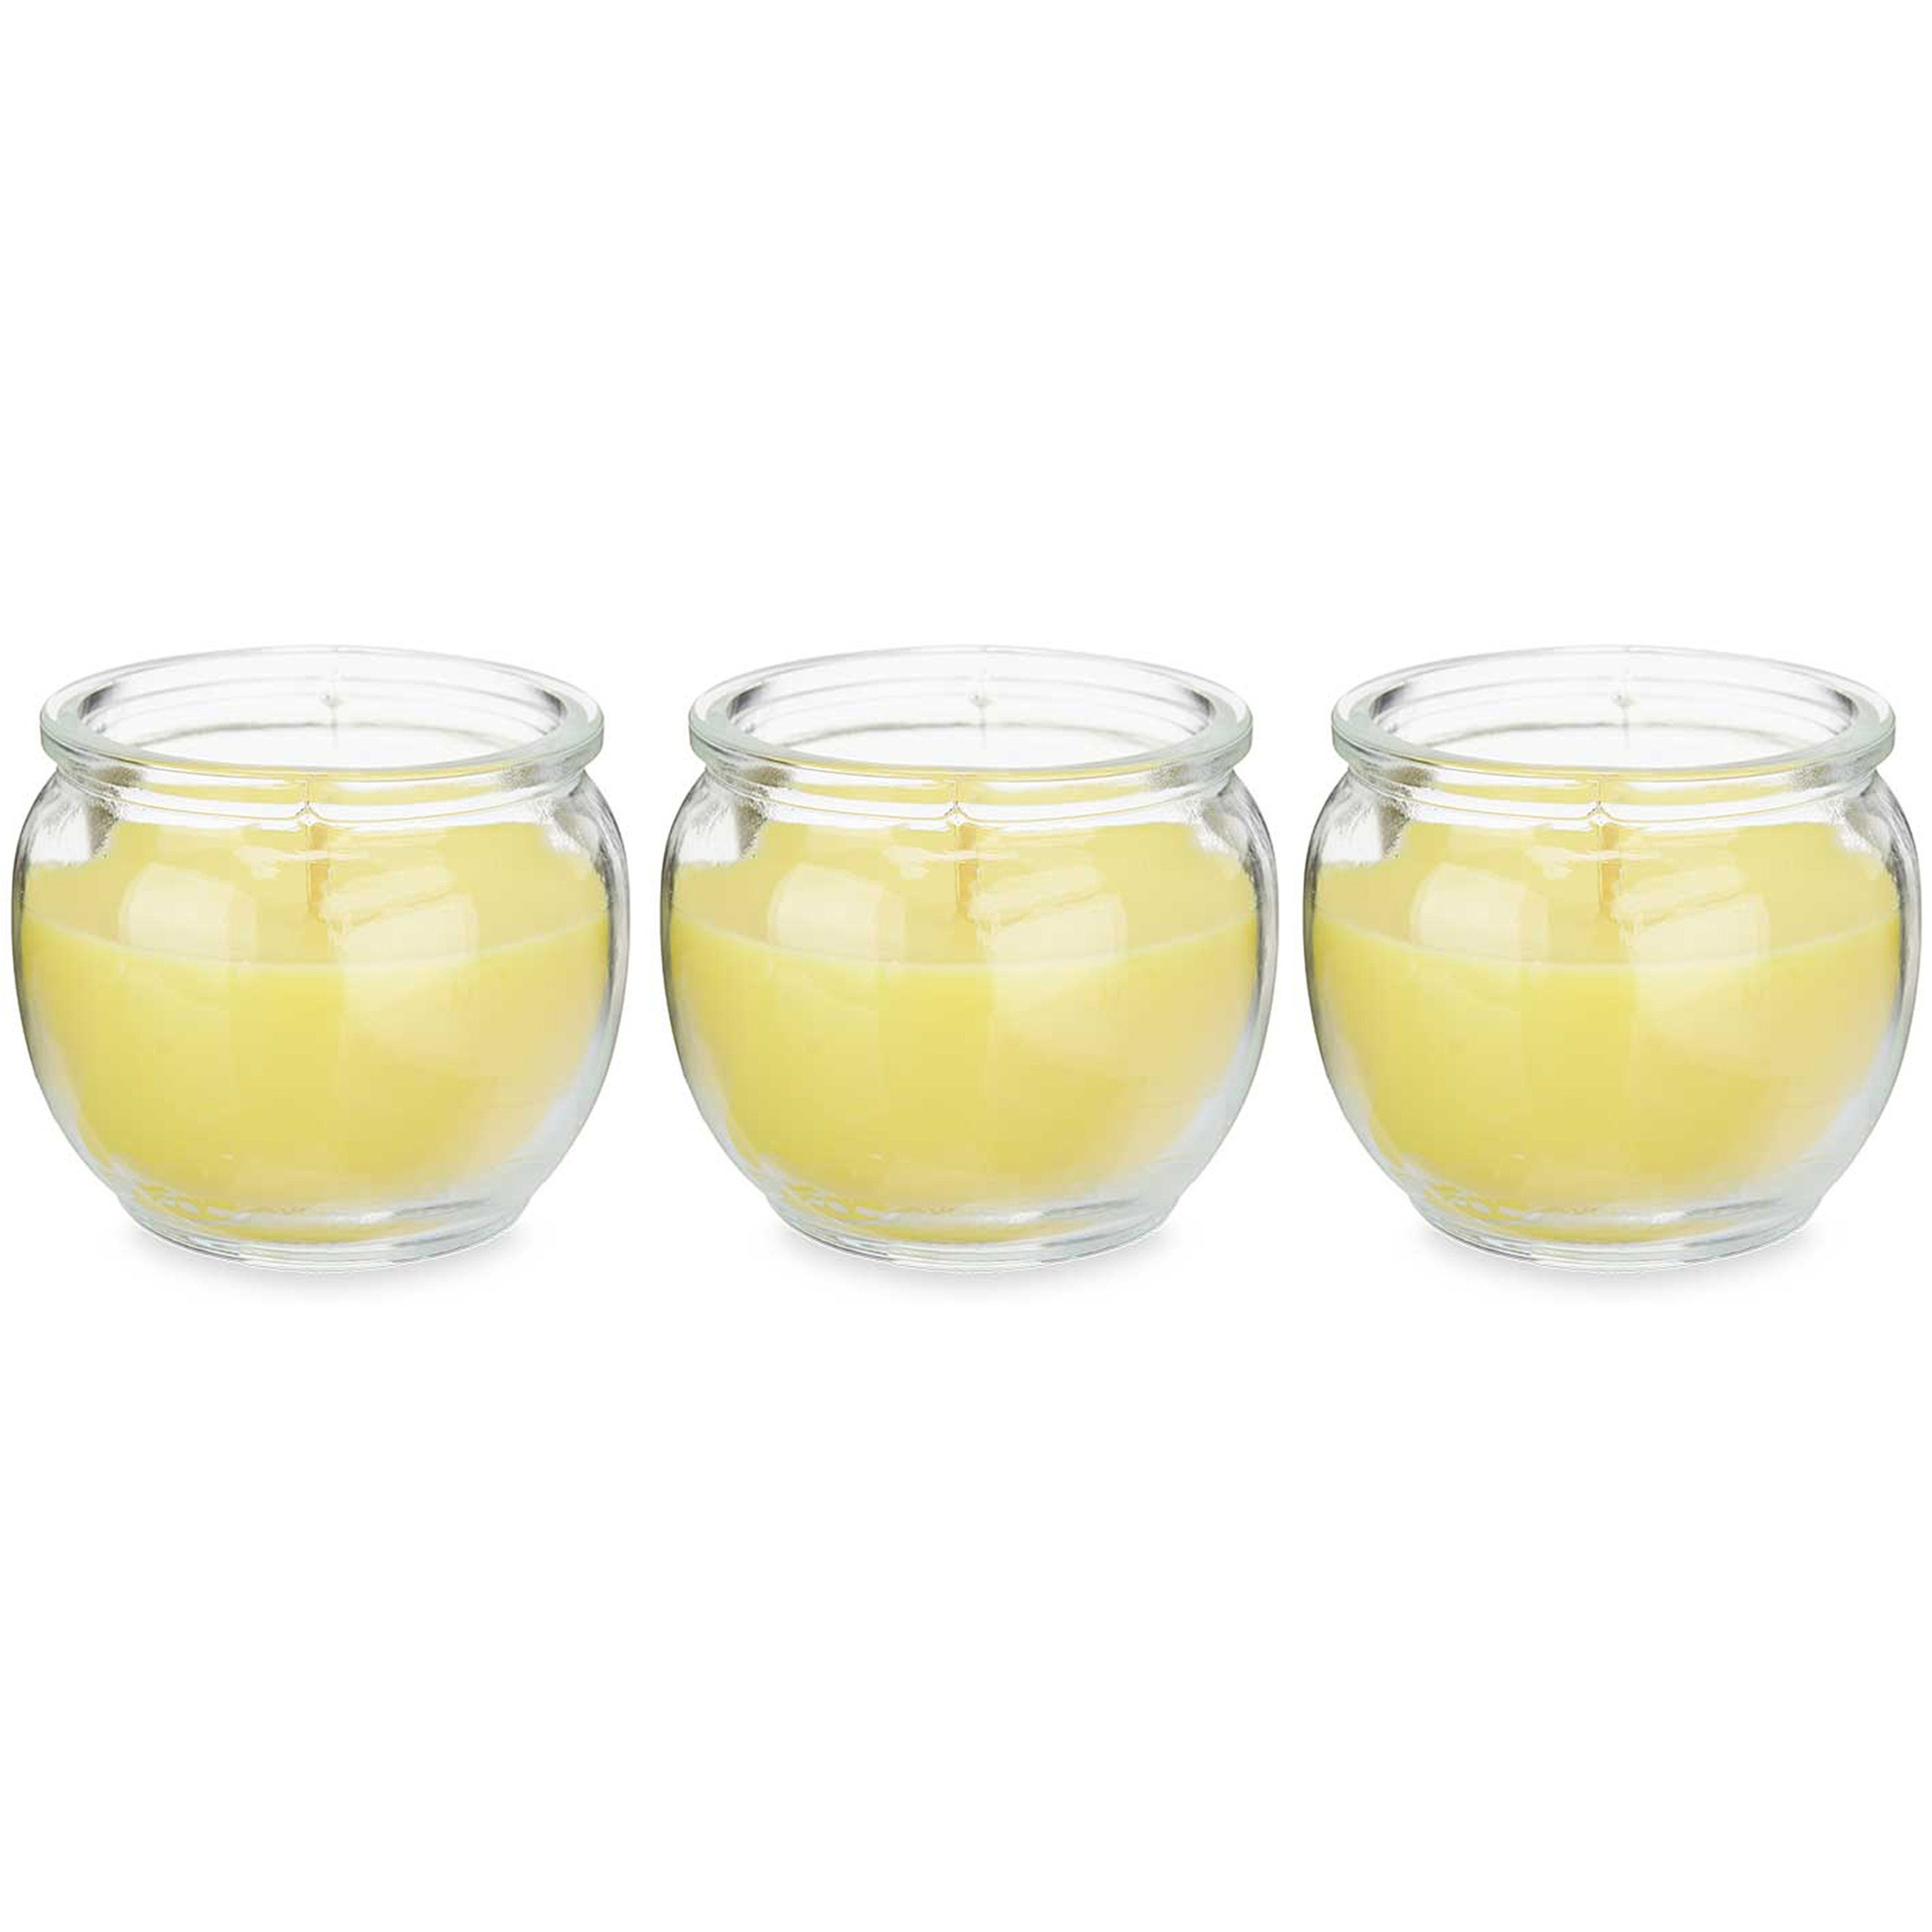 IBERGARDEN Citronella kaars in houder - 3x - glas - 20 branduren - D7.5 x H6 cm -